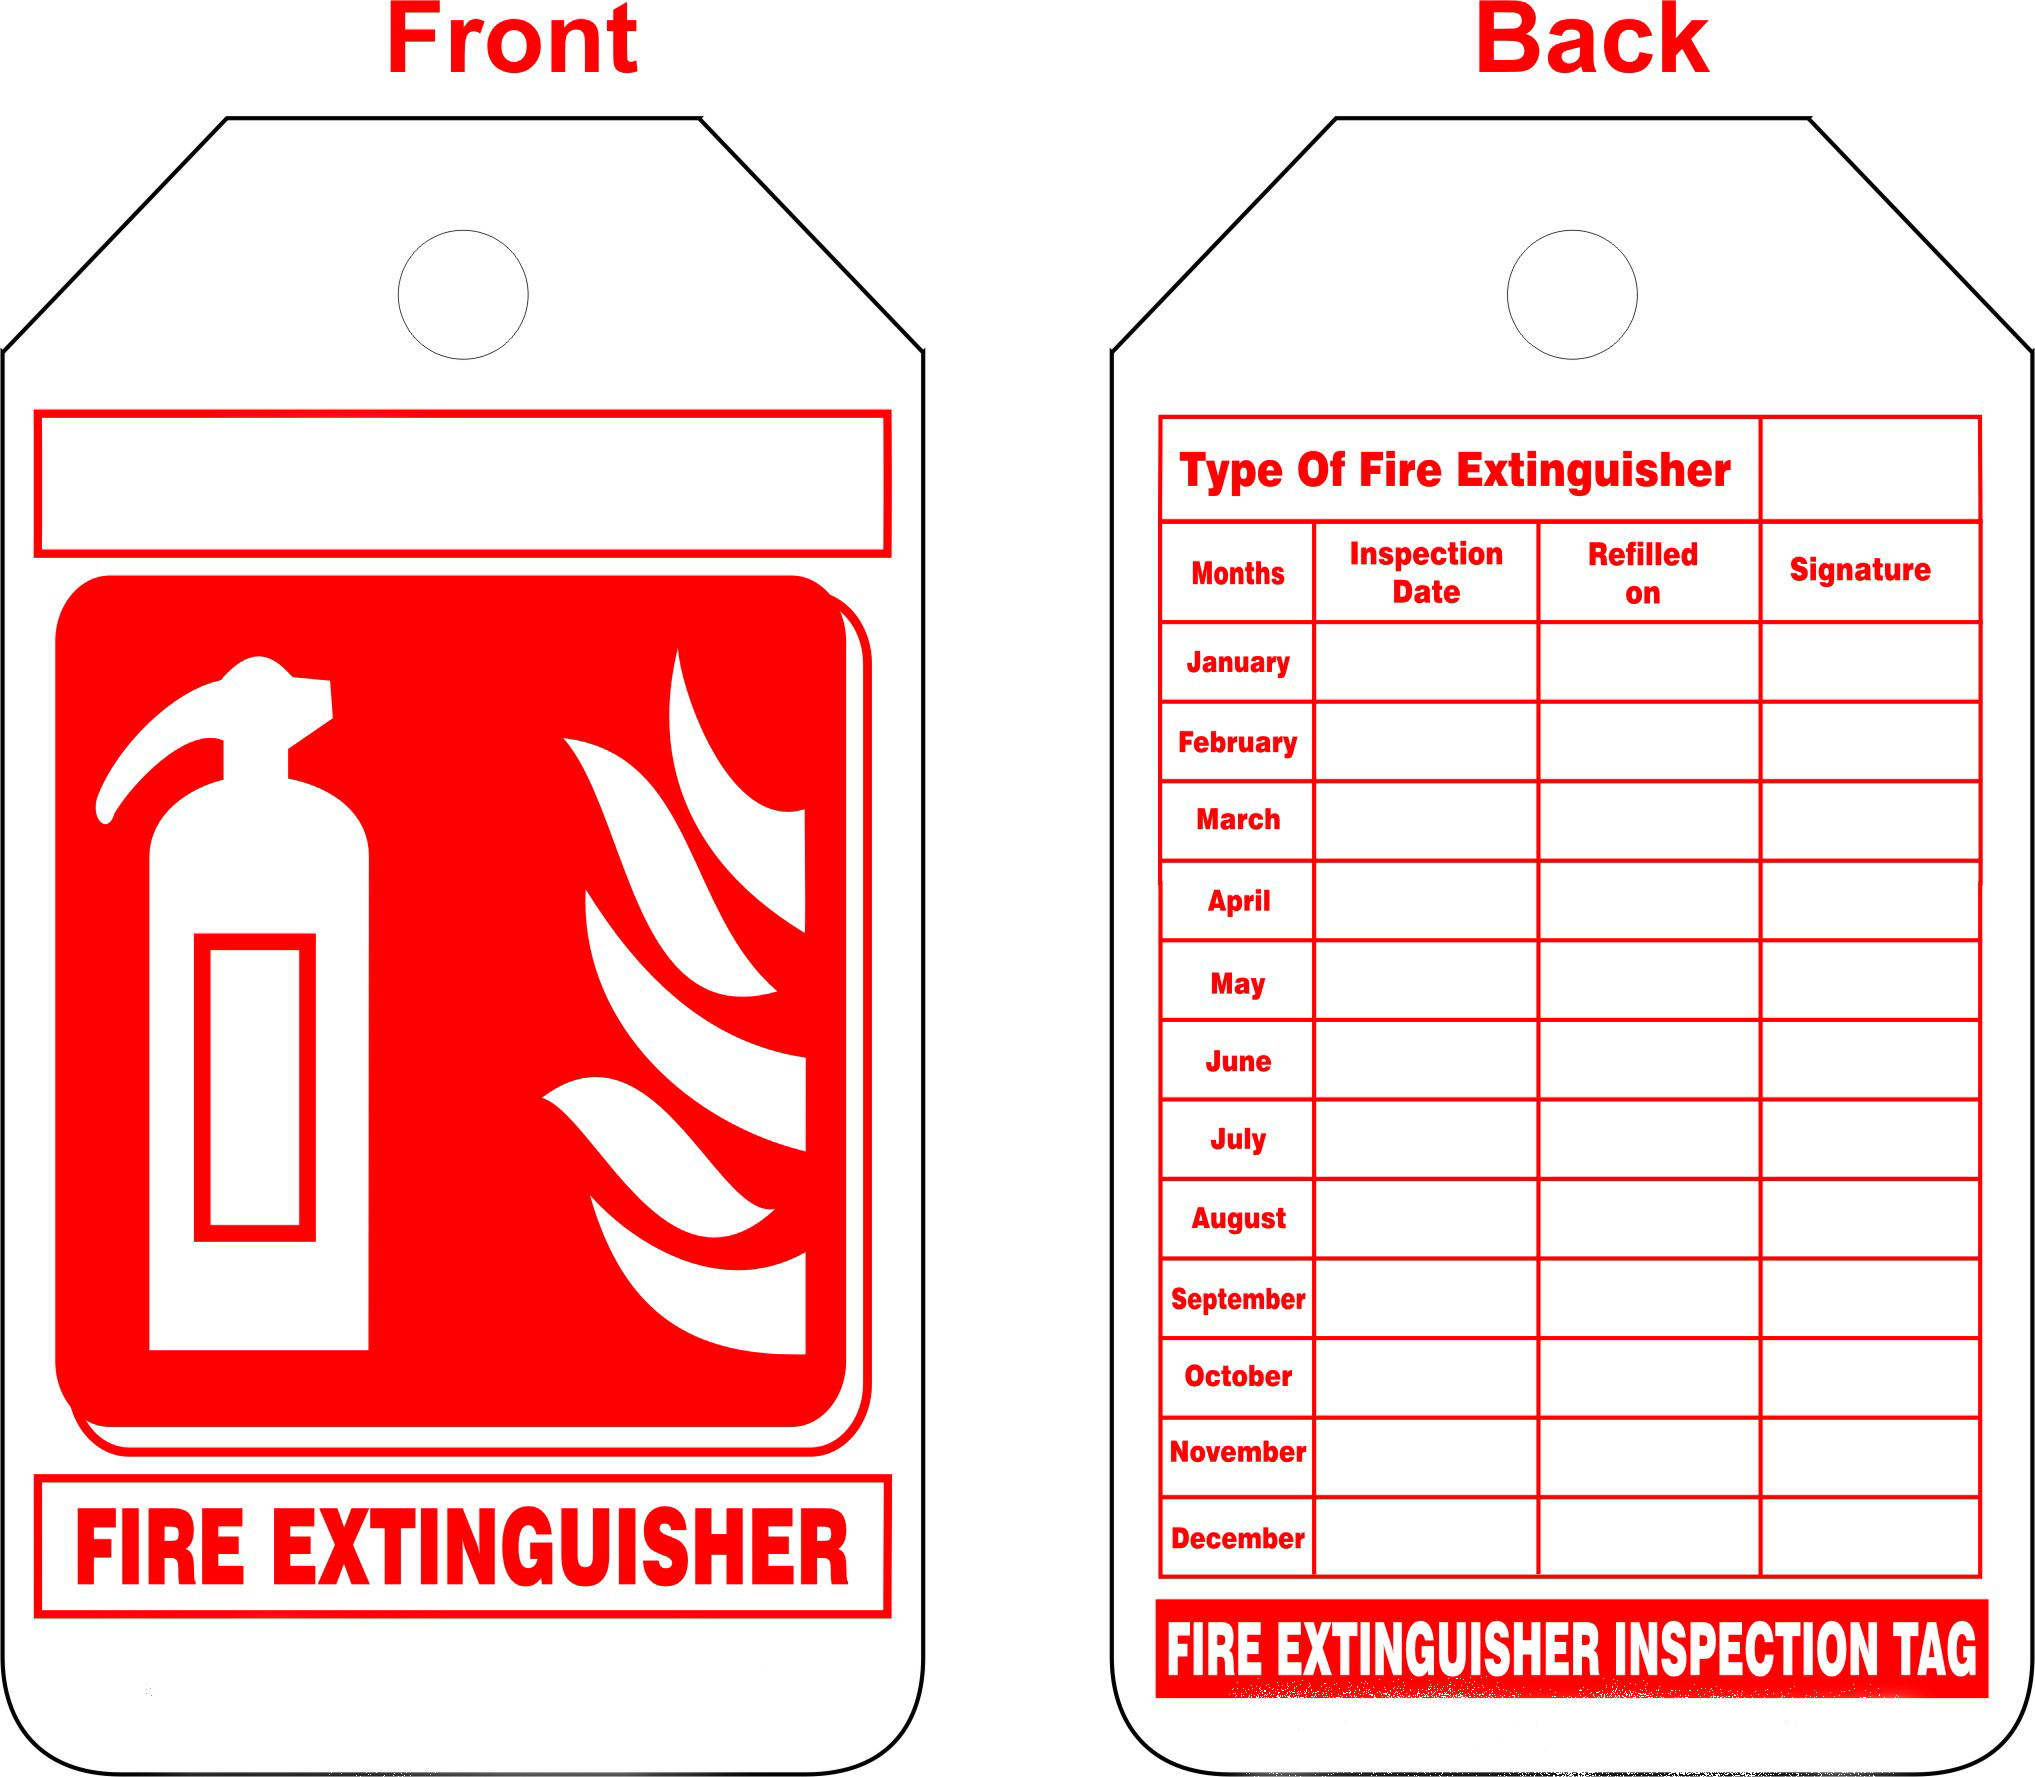 срок эксплуатации пожарных рукавов в пожарных шкафах